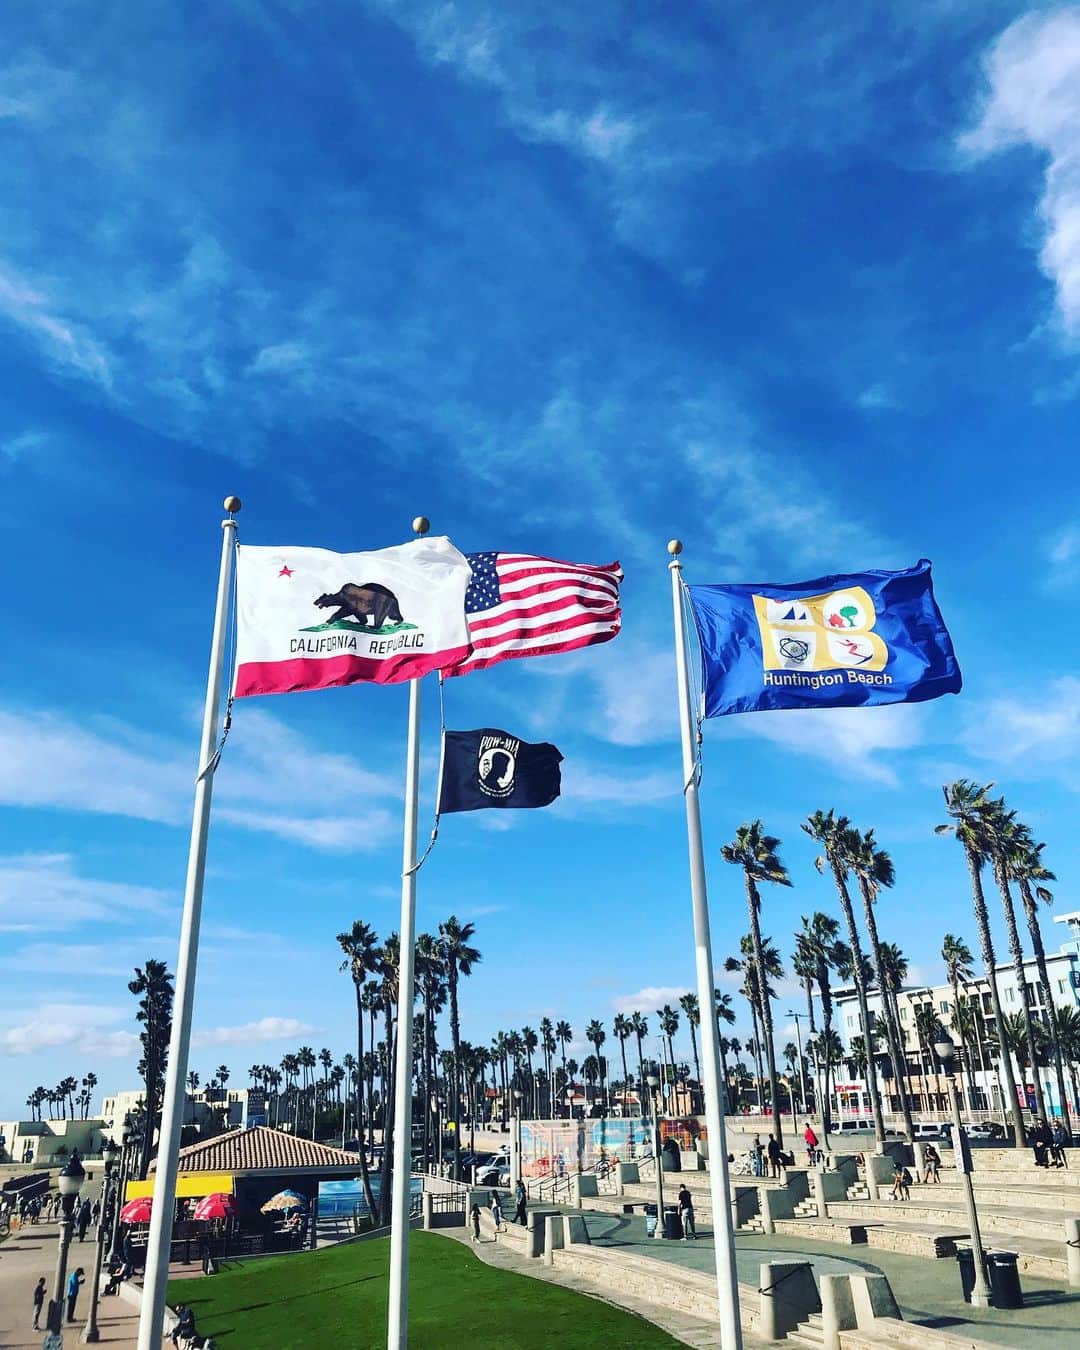 カリフォルニアスタイルのインスタグラム：「Huntington Beach Pierにたなびく4枚のフラッグ。 アメリカ合衆国、カリフォルニア州、ハンティントンビーチ市に加え、黒いPOW-MIAは戦地の兵士を気遣う意味合いのモノ。  #californiastyle #california #huntingtonbeach #surftown #flag #surfcity #powmia #oc #orangecounty #lightningmagazine #lightningjapan #カリフォルニアスタイル #カリフォルニア #ハンティントンビーチ #フラッグ #星条旗 #starsandstripes #カリフォルニア工務店 #ライフスタイル不動産 #ライフスタイル #bluesky」